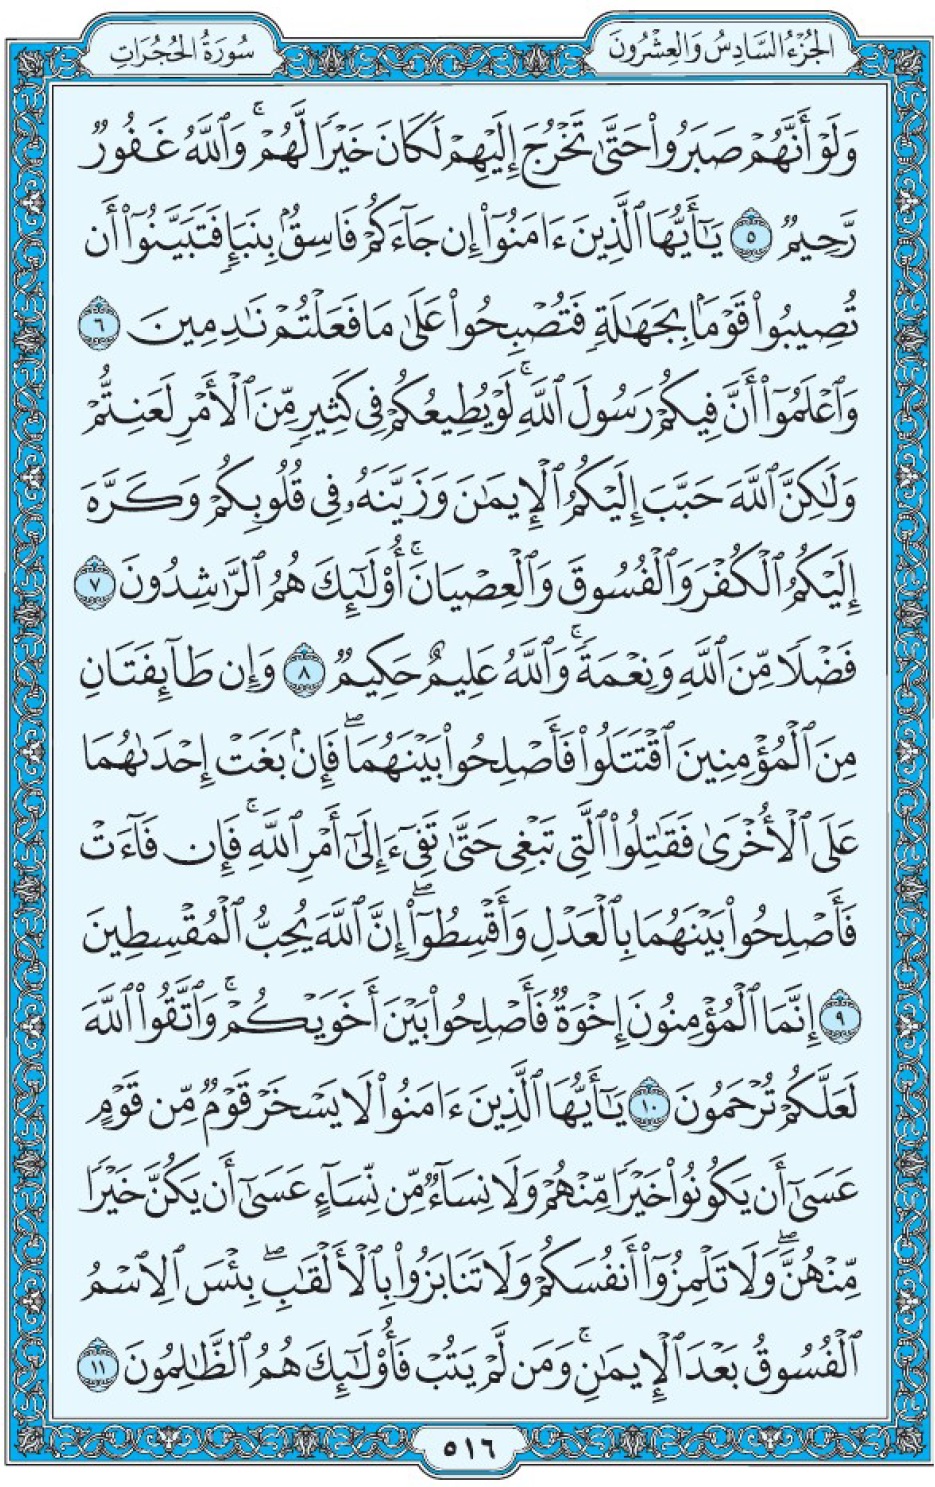 Коран Мединский мусхаф страница 516, аль-Худжират, аят 5-11